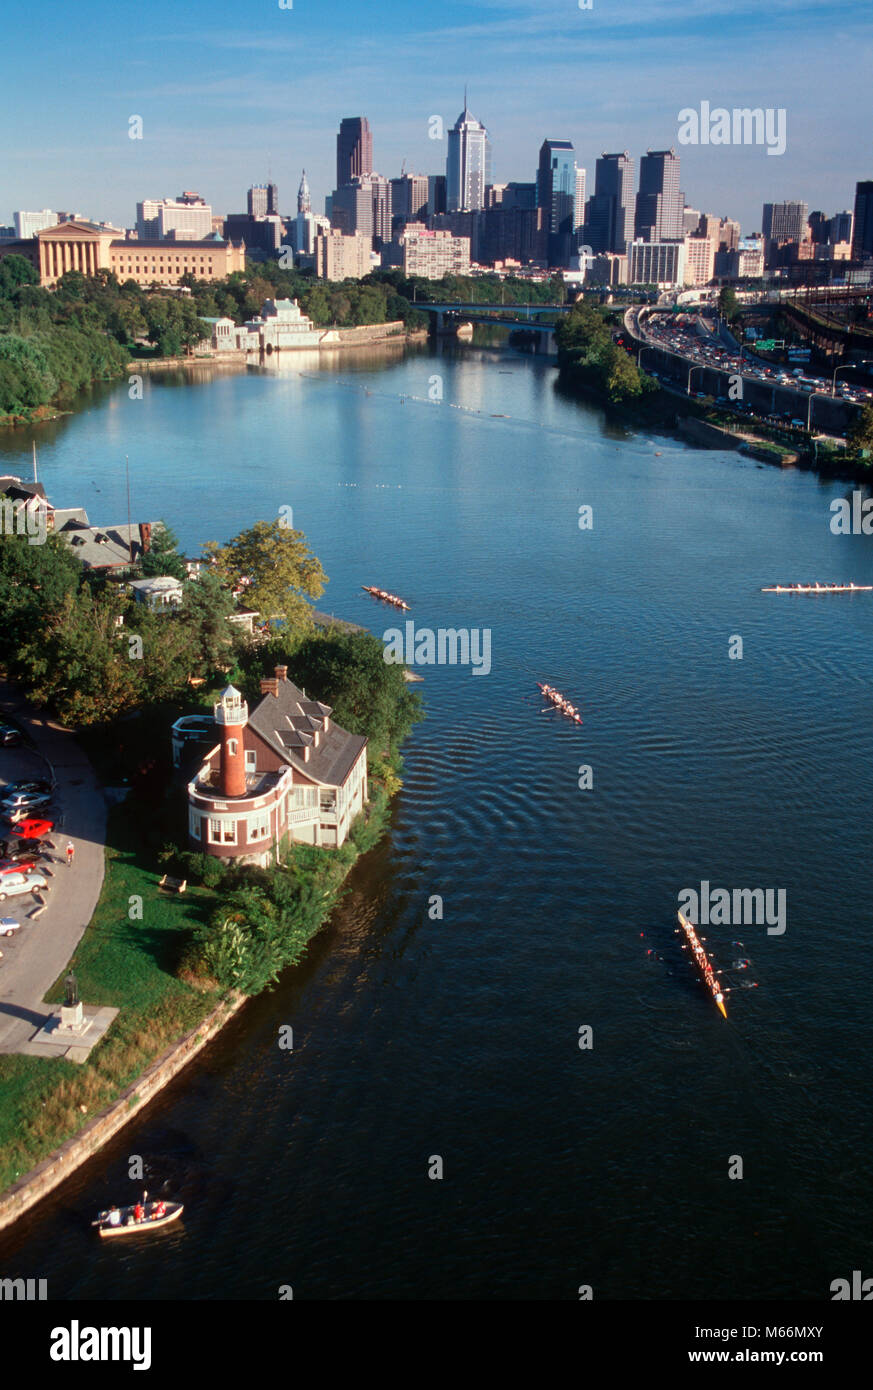 1990 s Luftbild des Schuylkill River und die Skyline von Philadelphia Pennsylvania USA-kp 6145 DEG 002 HARS KEYSTONE STATE TAGESLICHT EDIFICE DELAWARE SENKE LUFTAUFNAHME BOATHOUSE ROW BRÜDERLICHEN WIEGE DER FREIHEIT ALTMODISCHE SCULLERS SCULLS Stockfoto